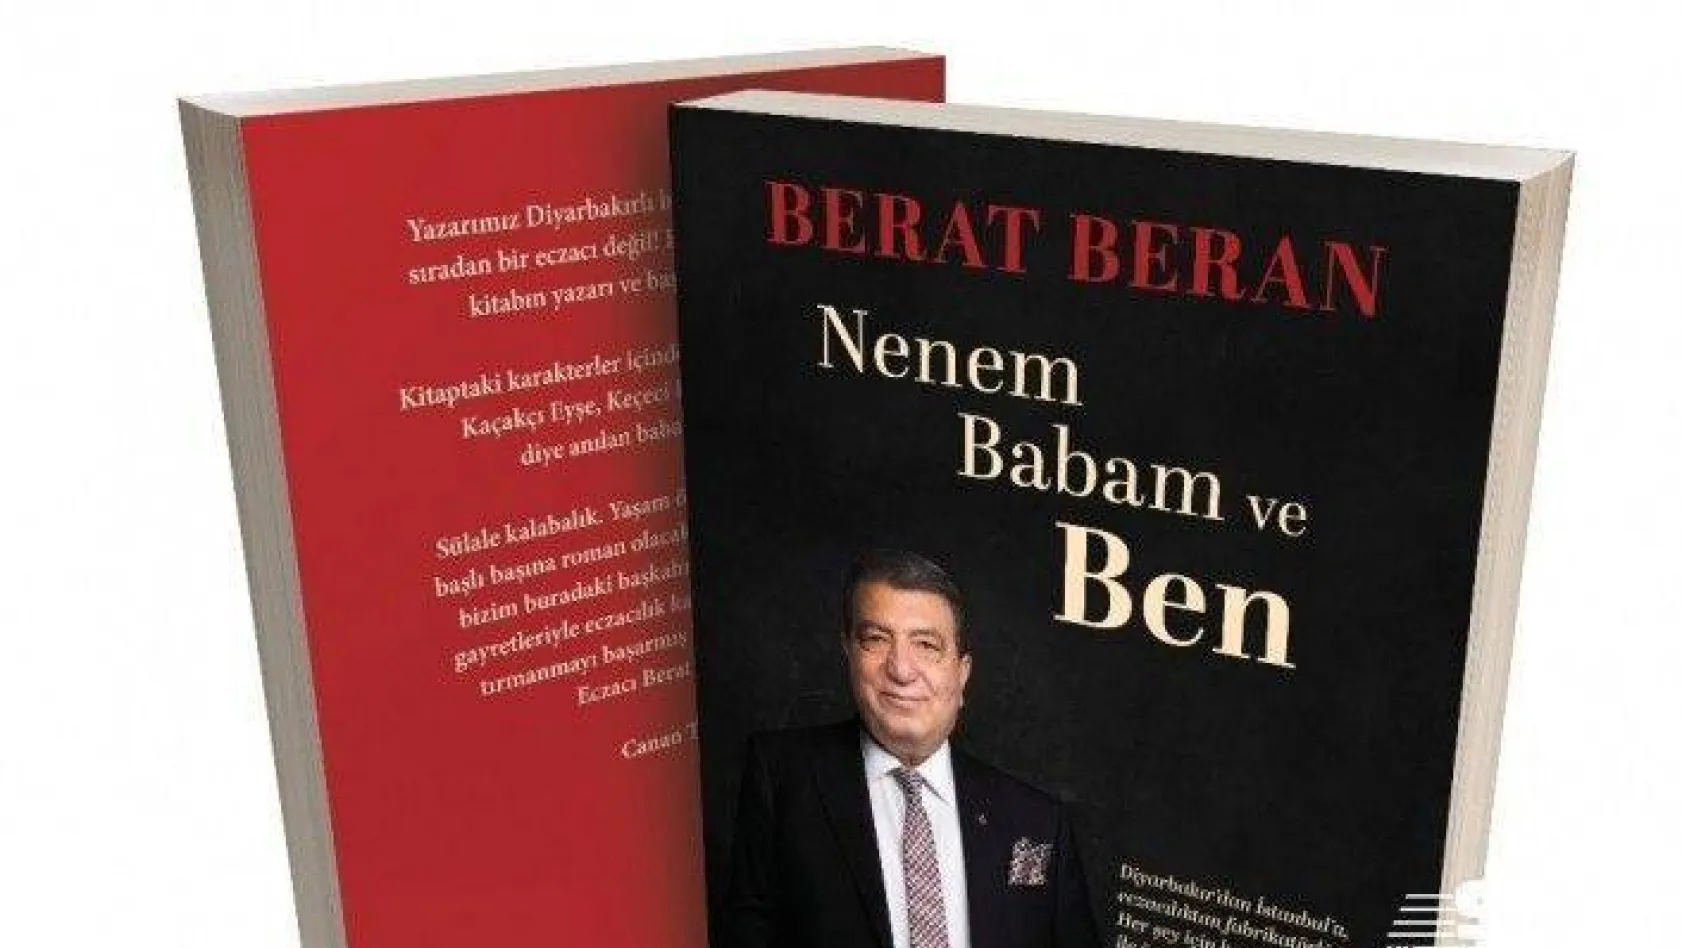 Eczacı Berat Beran'ın yaşam öyküsü raflarda yerini aldı